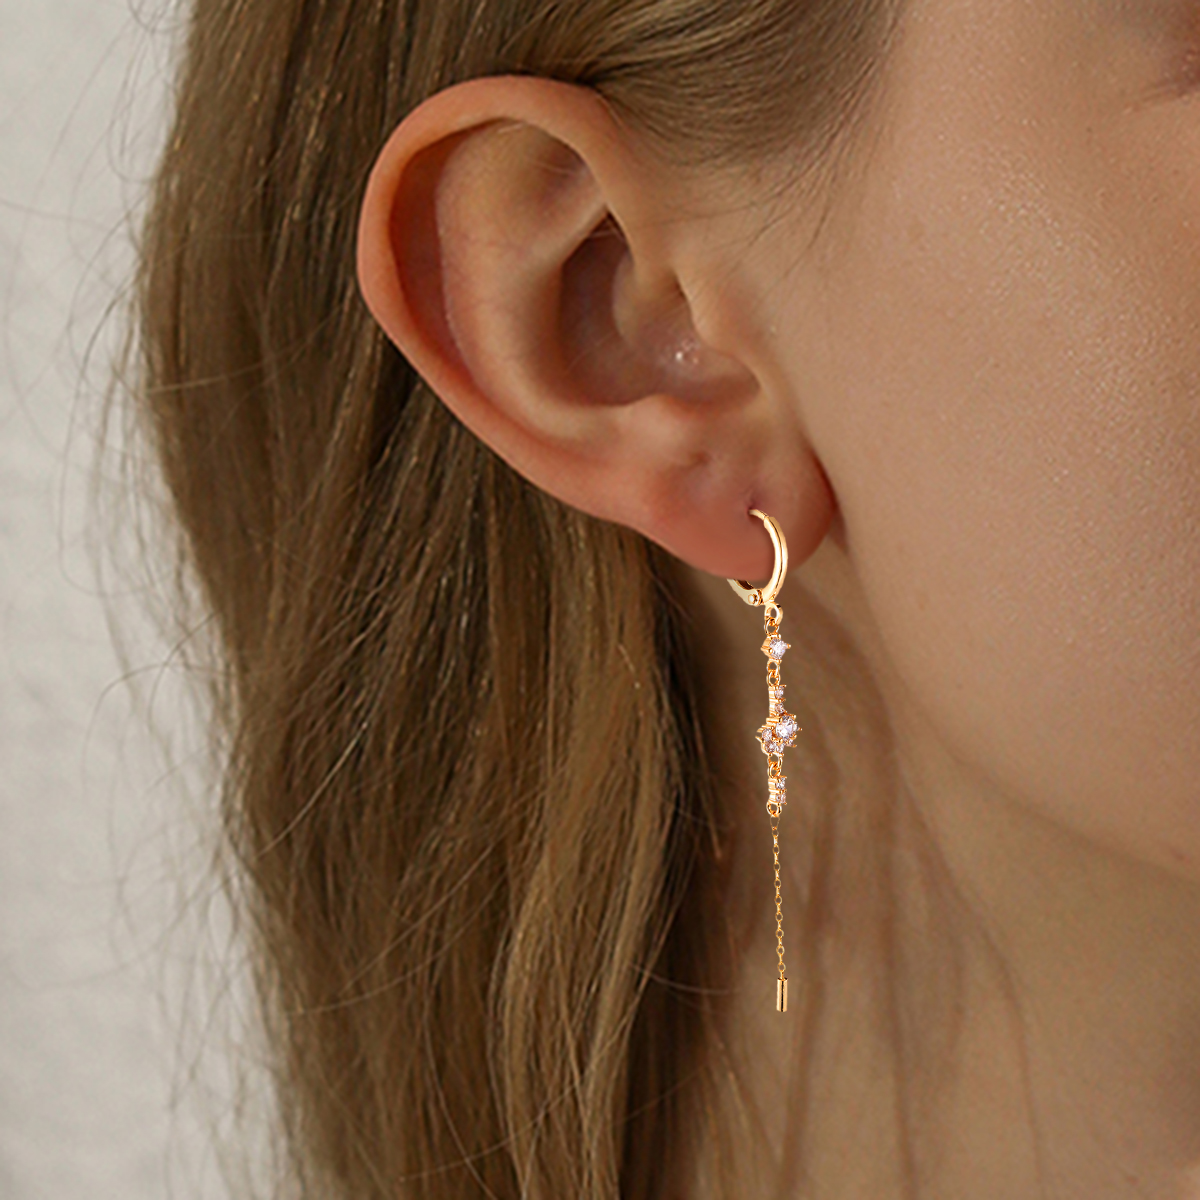 Hängende Glänze Gold-plated Earrings